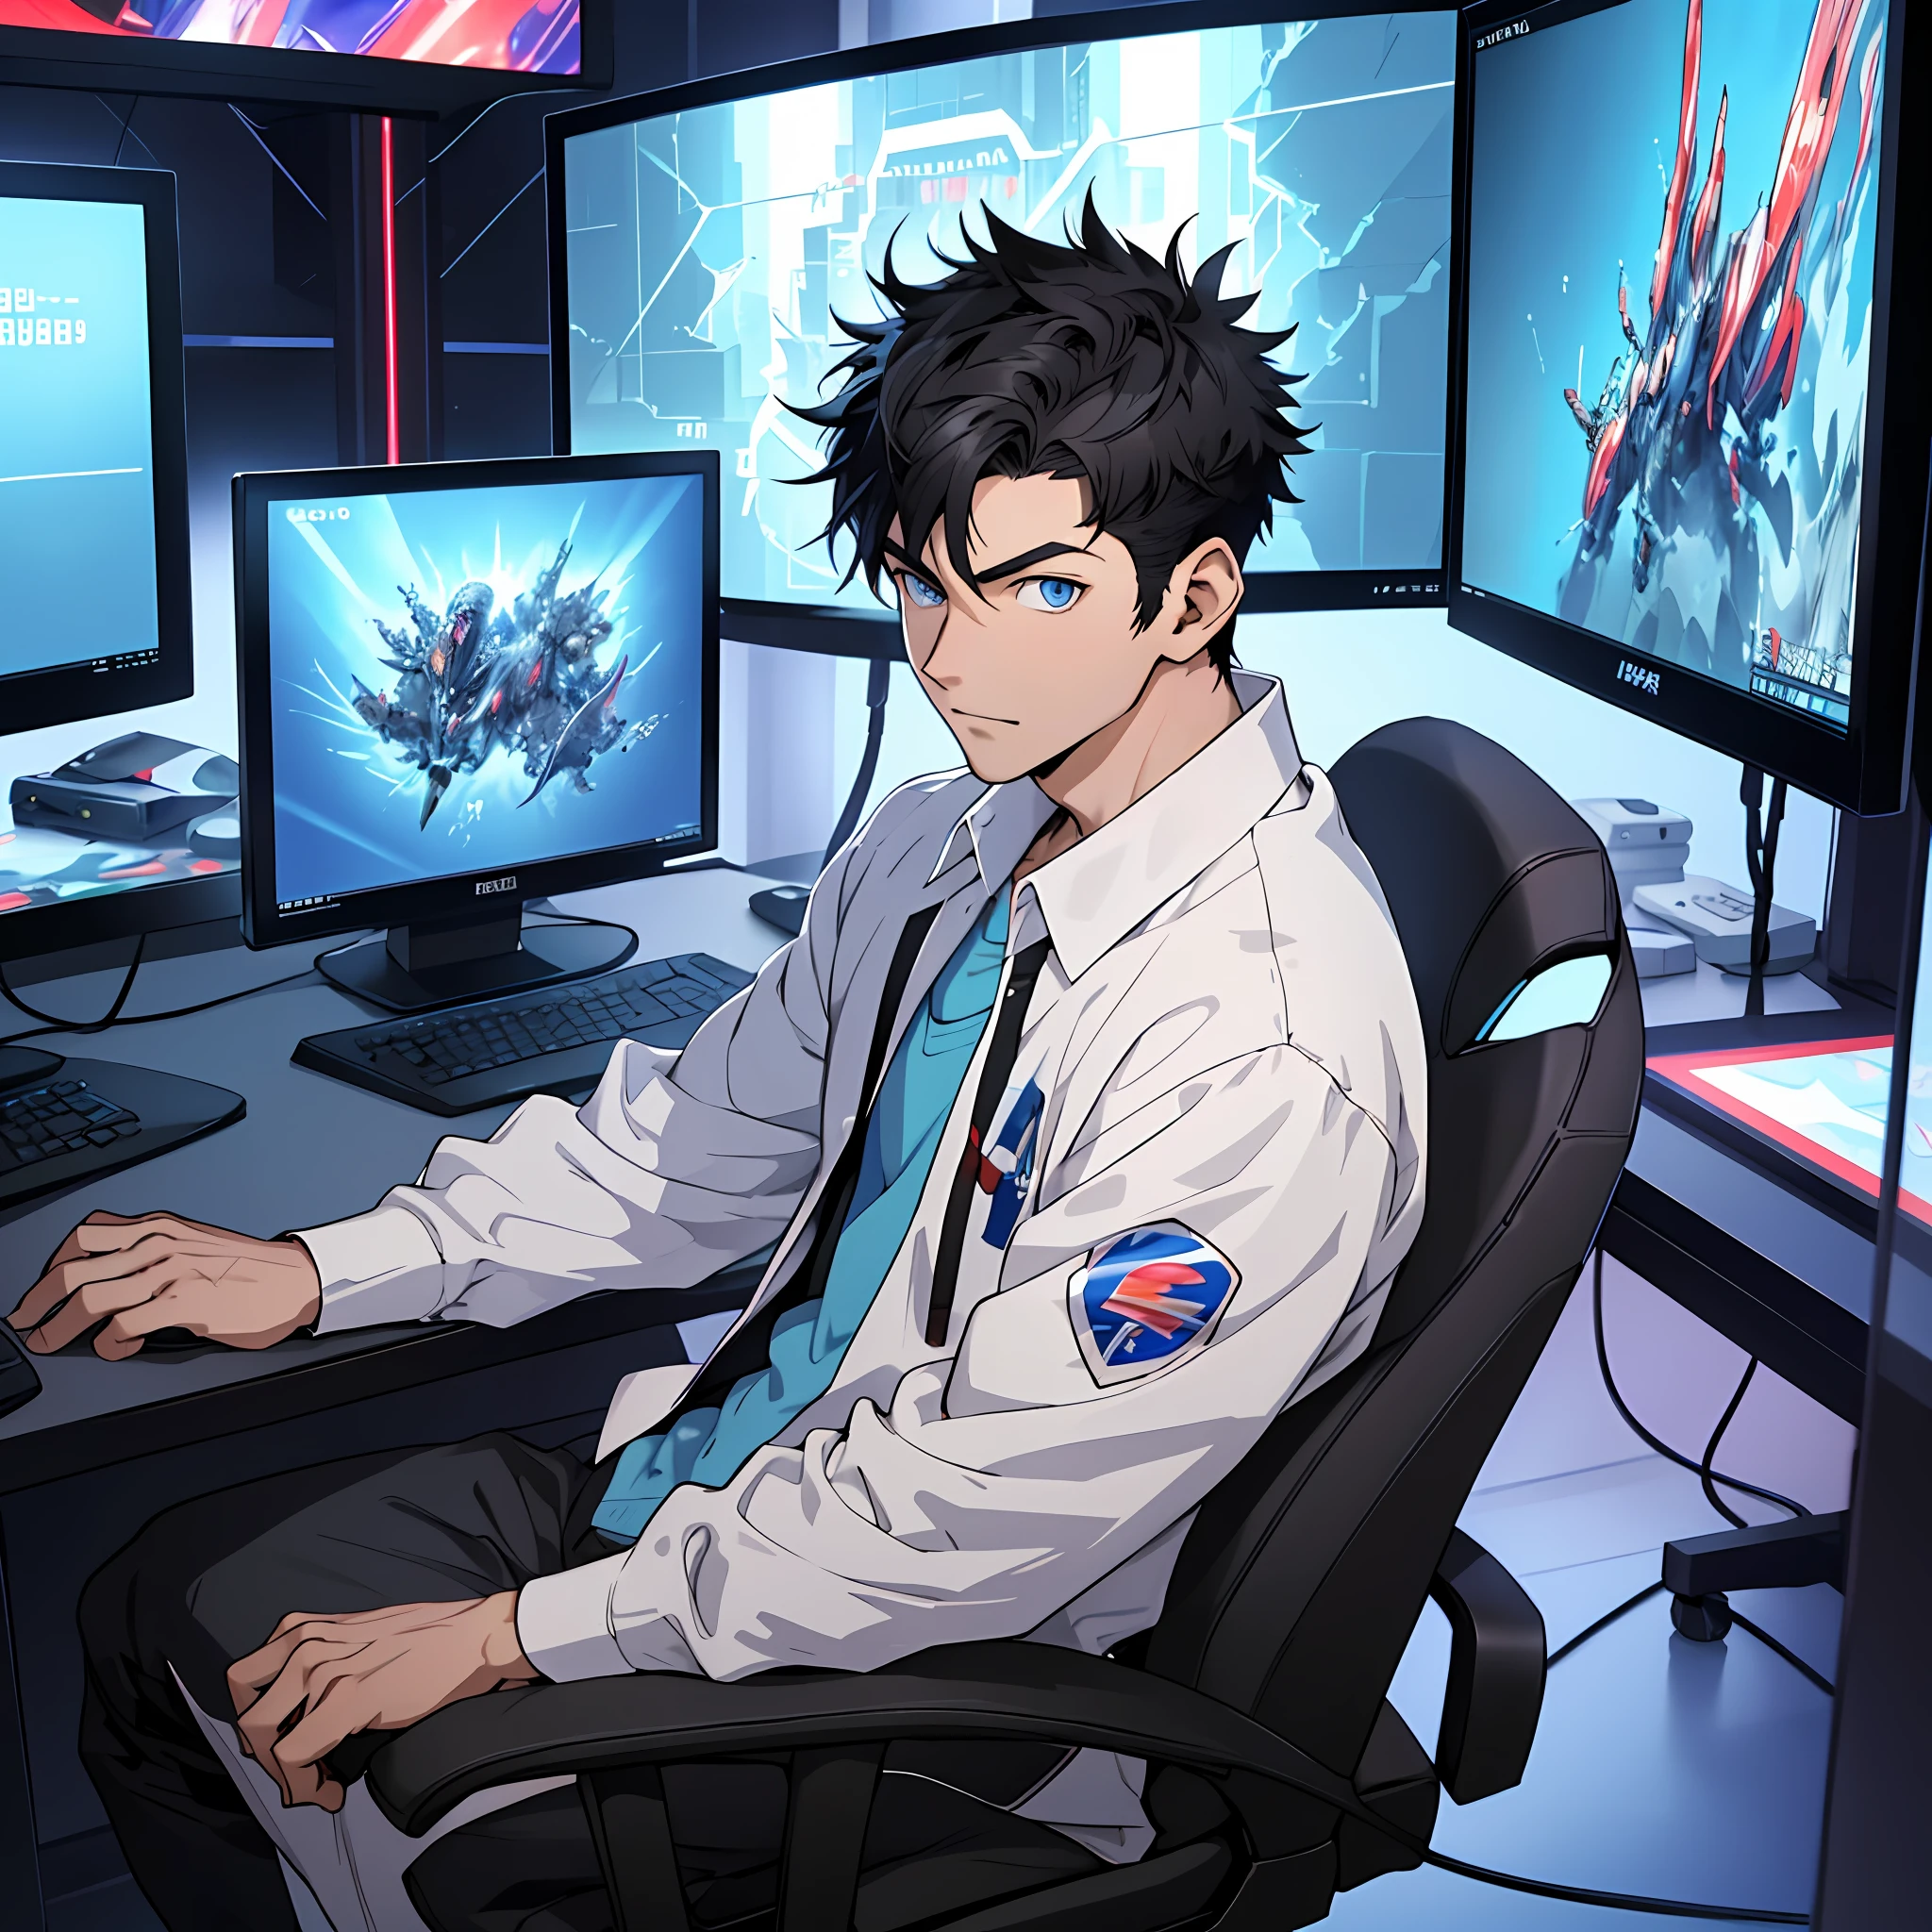 beste Qualität: 1.0), (Superhohe Auflösung: 1.0), Anime Junge, kurze schwarze Haare, blaue Augen, vor dem Computer sitzen und Spiele spielen, Hintergrund im E-Sport-Raum,